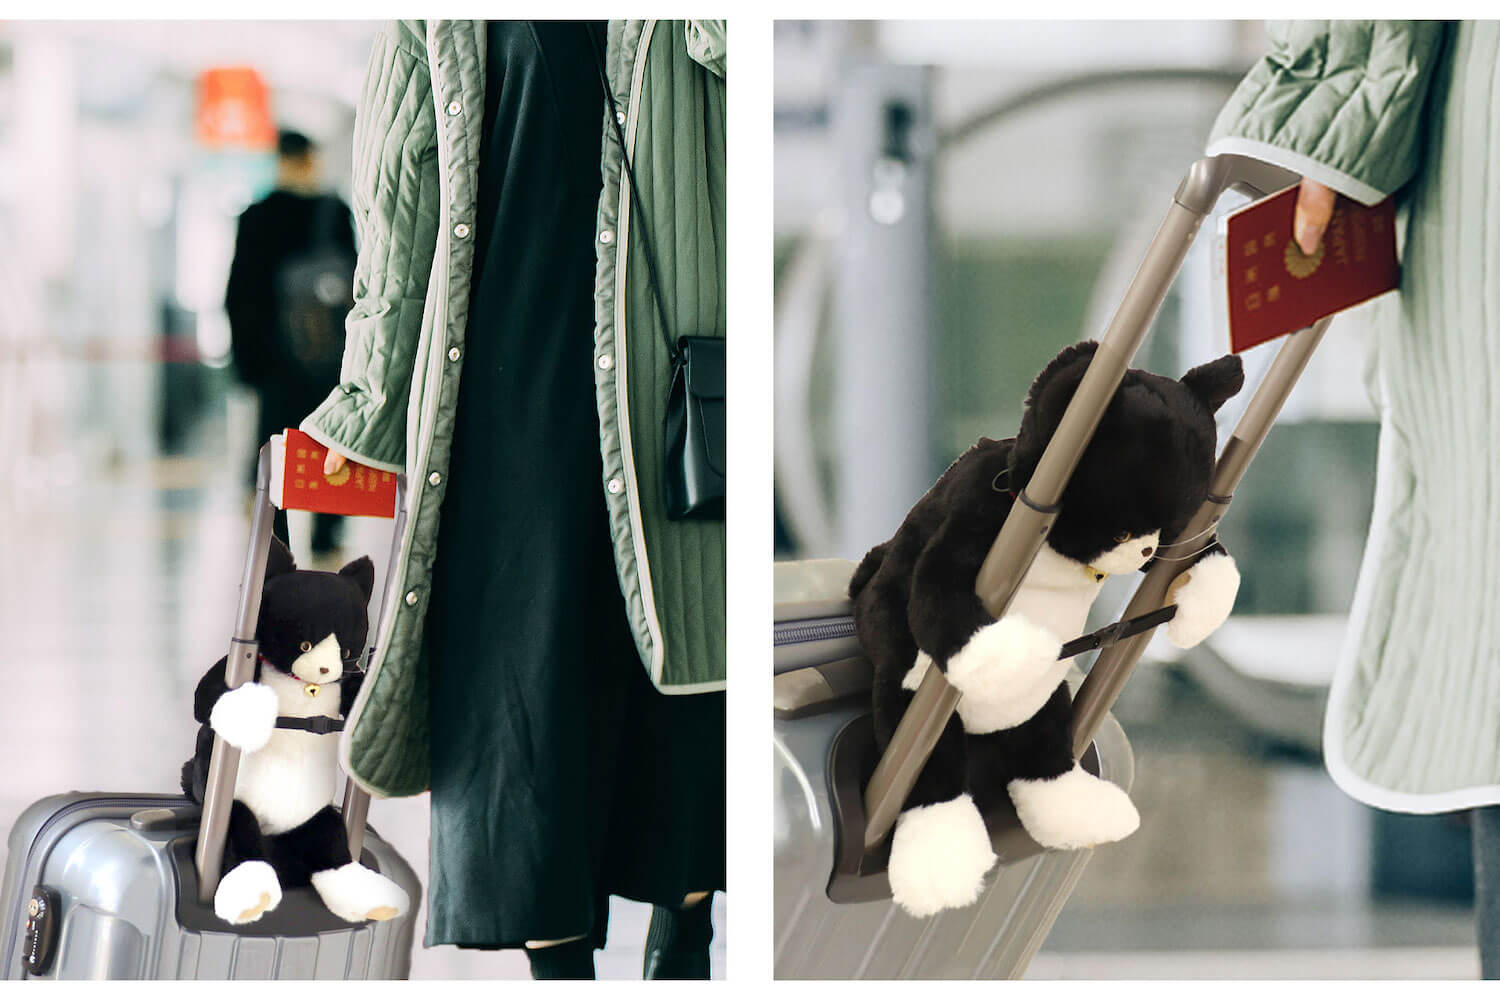 キャリーケースに乗せられる猫型のバッグ「キャリーオンキャット」使用イメージ